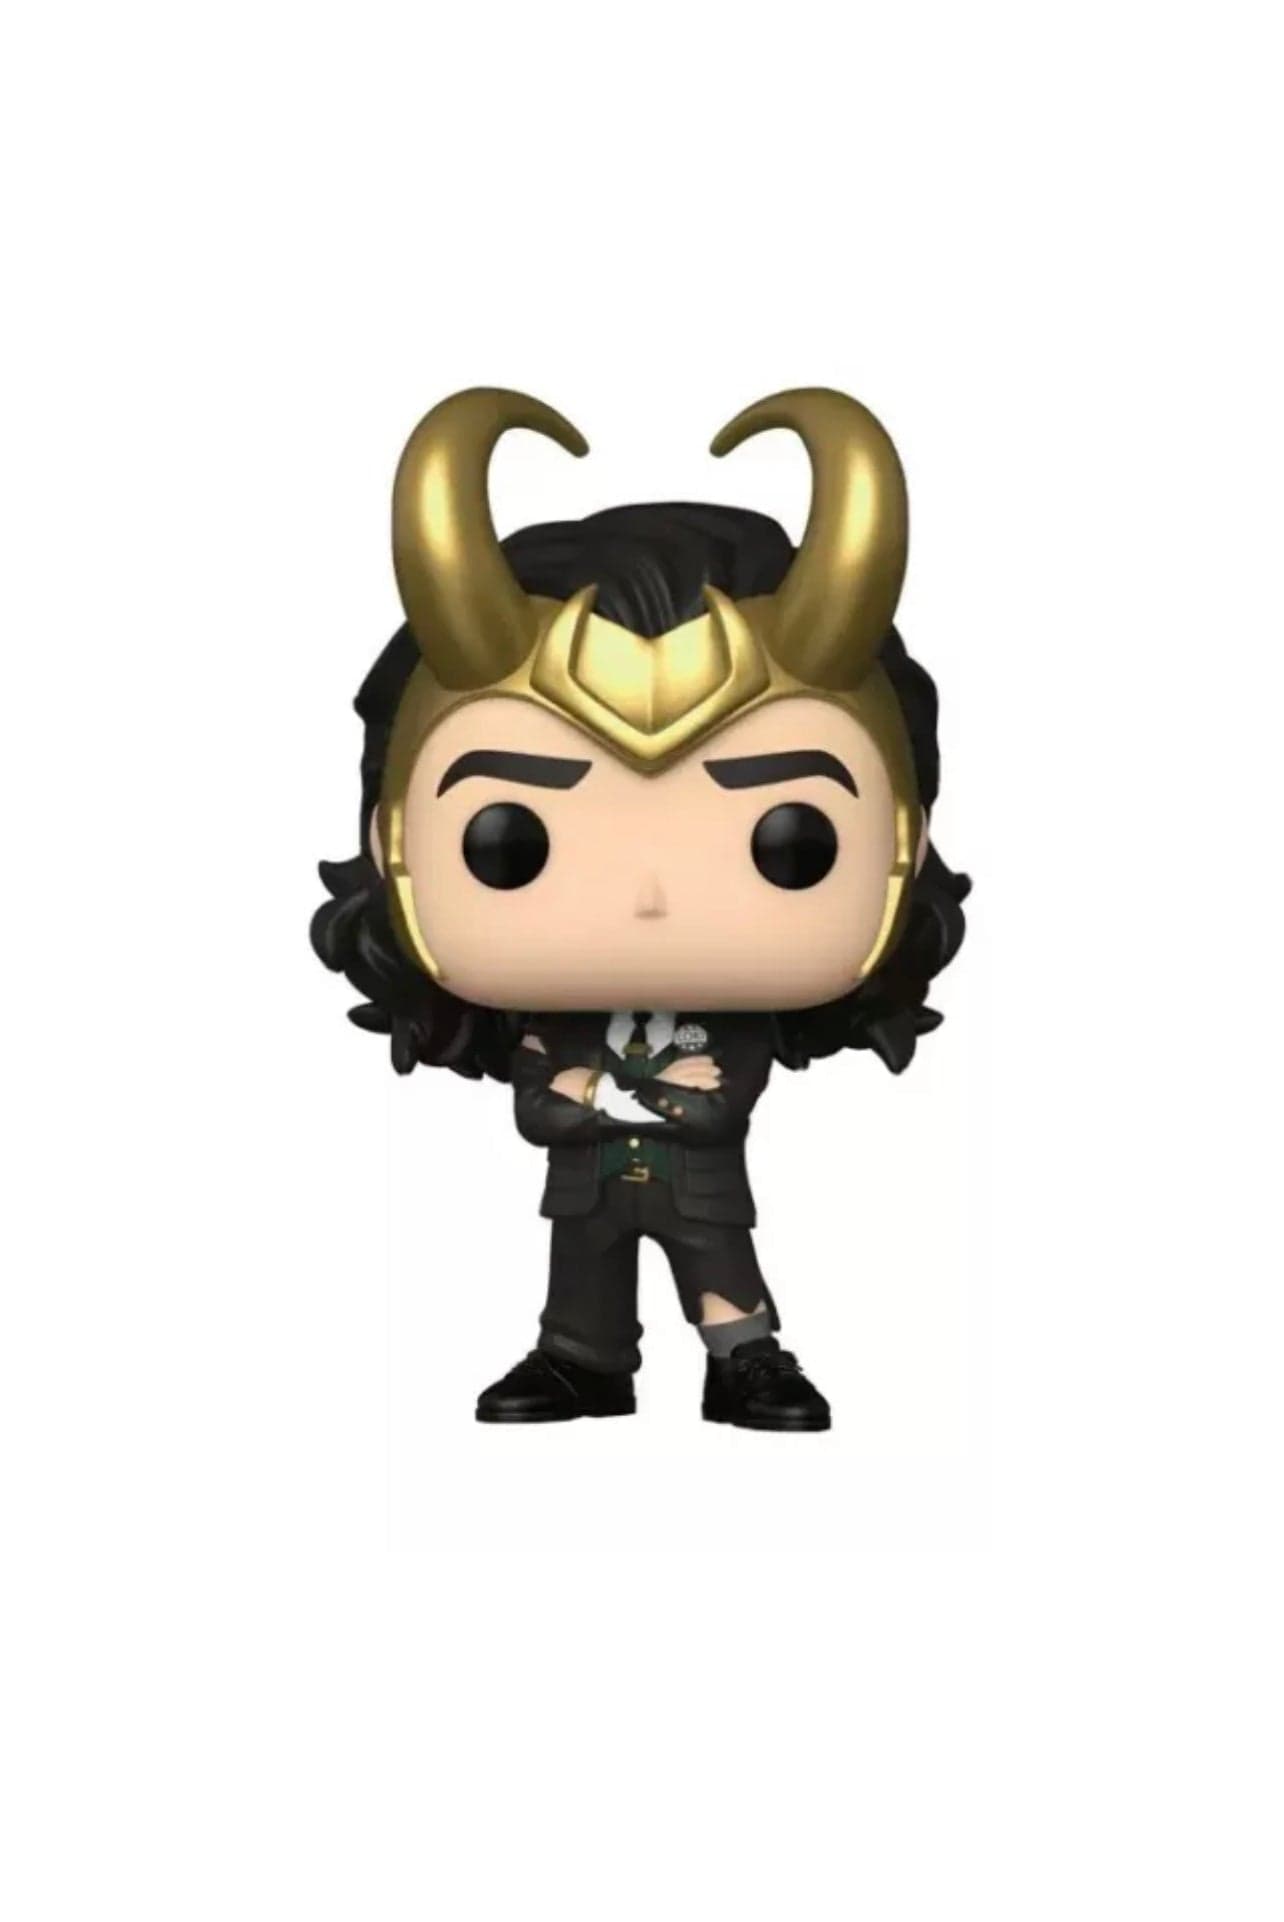 Loki Series President Loki Pop! Vinyl Figure